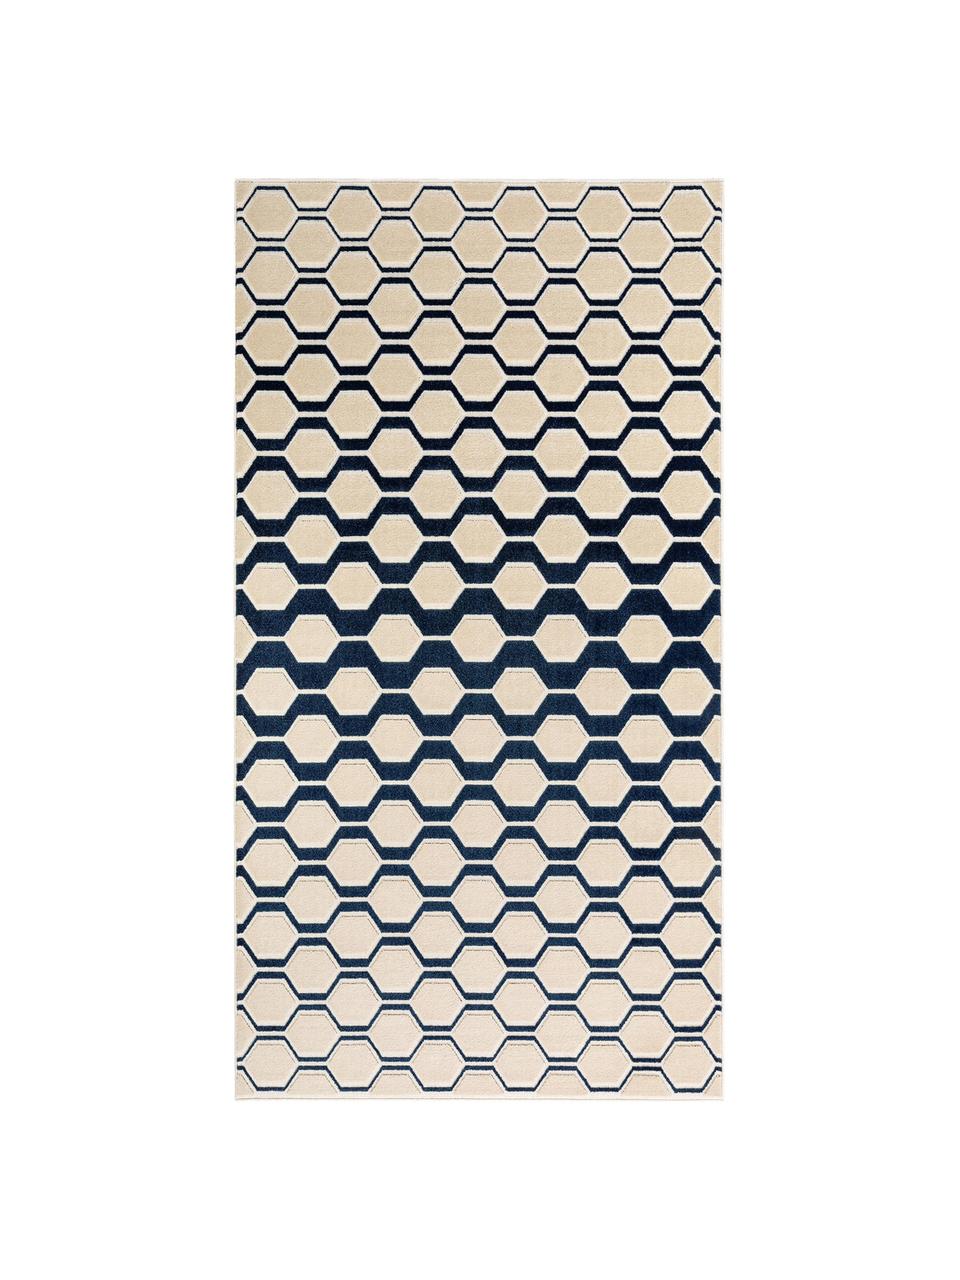 Teppich Diamond Key mit Hoch-Tief-Effekt in Dunkelblau-Beige, Flor: Polypropylen, Dunkelblau, Beige, B 240 x L 340 cm (Größe XL)